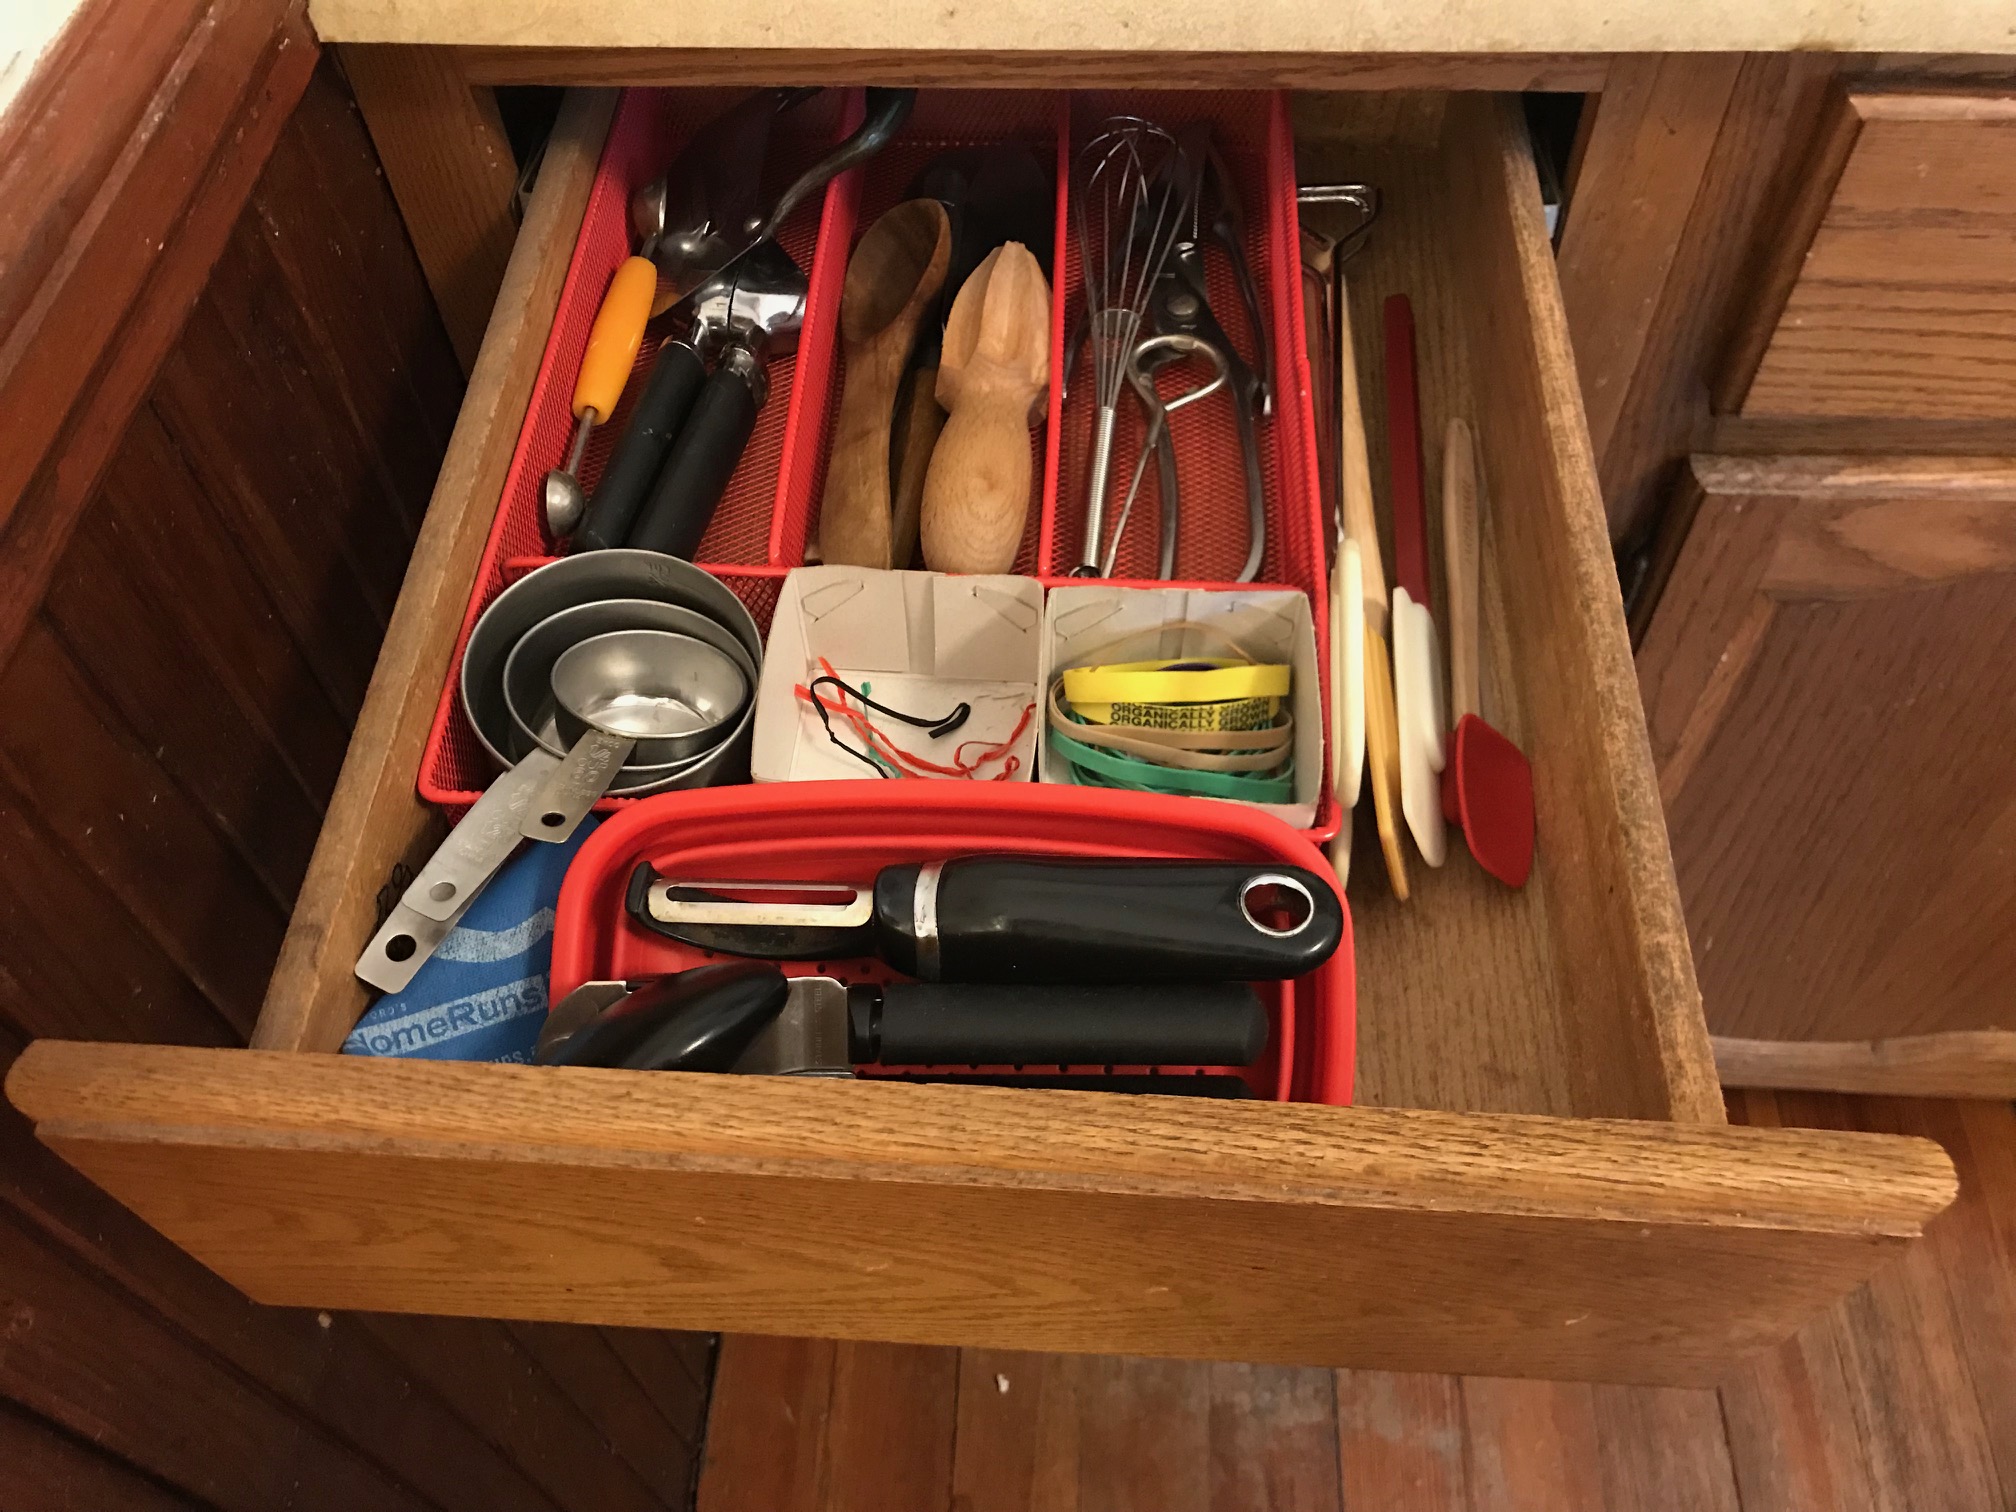 Organizd kitchen drawer